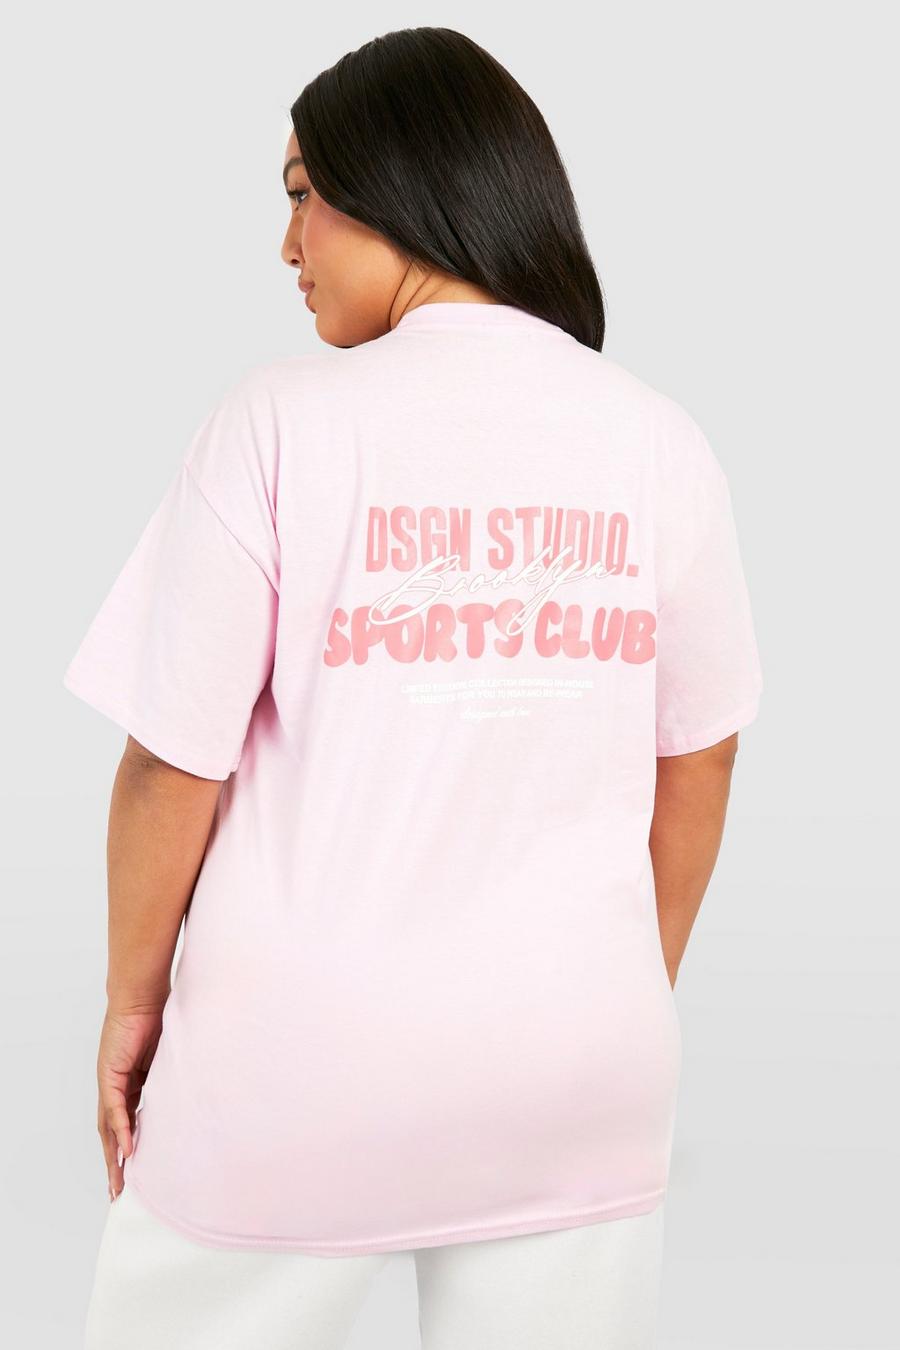 Camiseta Plus con estampado Dsgn Studio Brooklyn, Baby pink image number 1